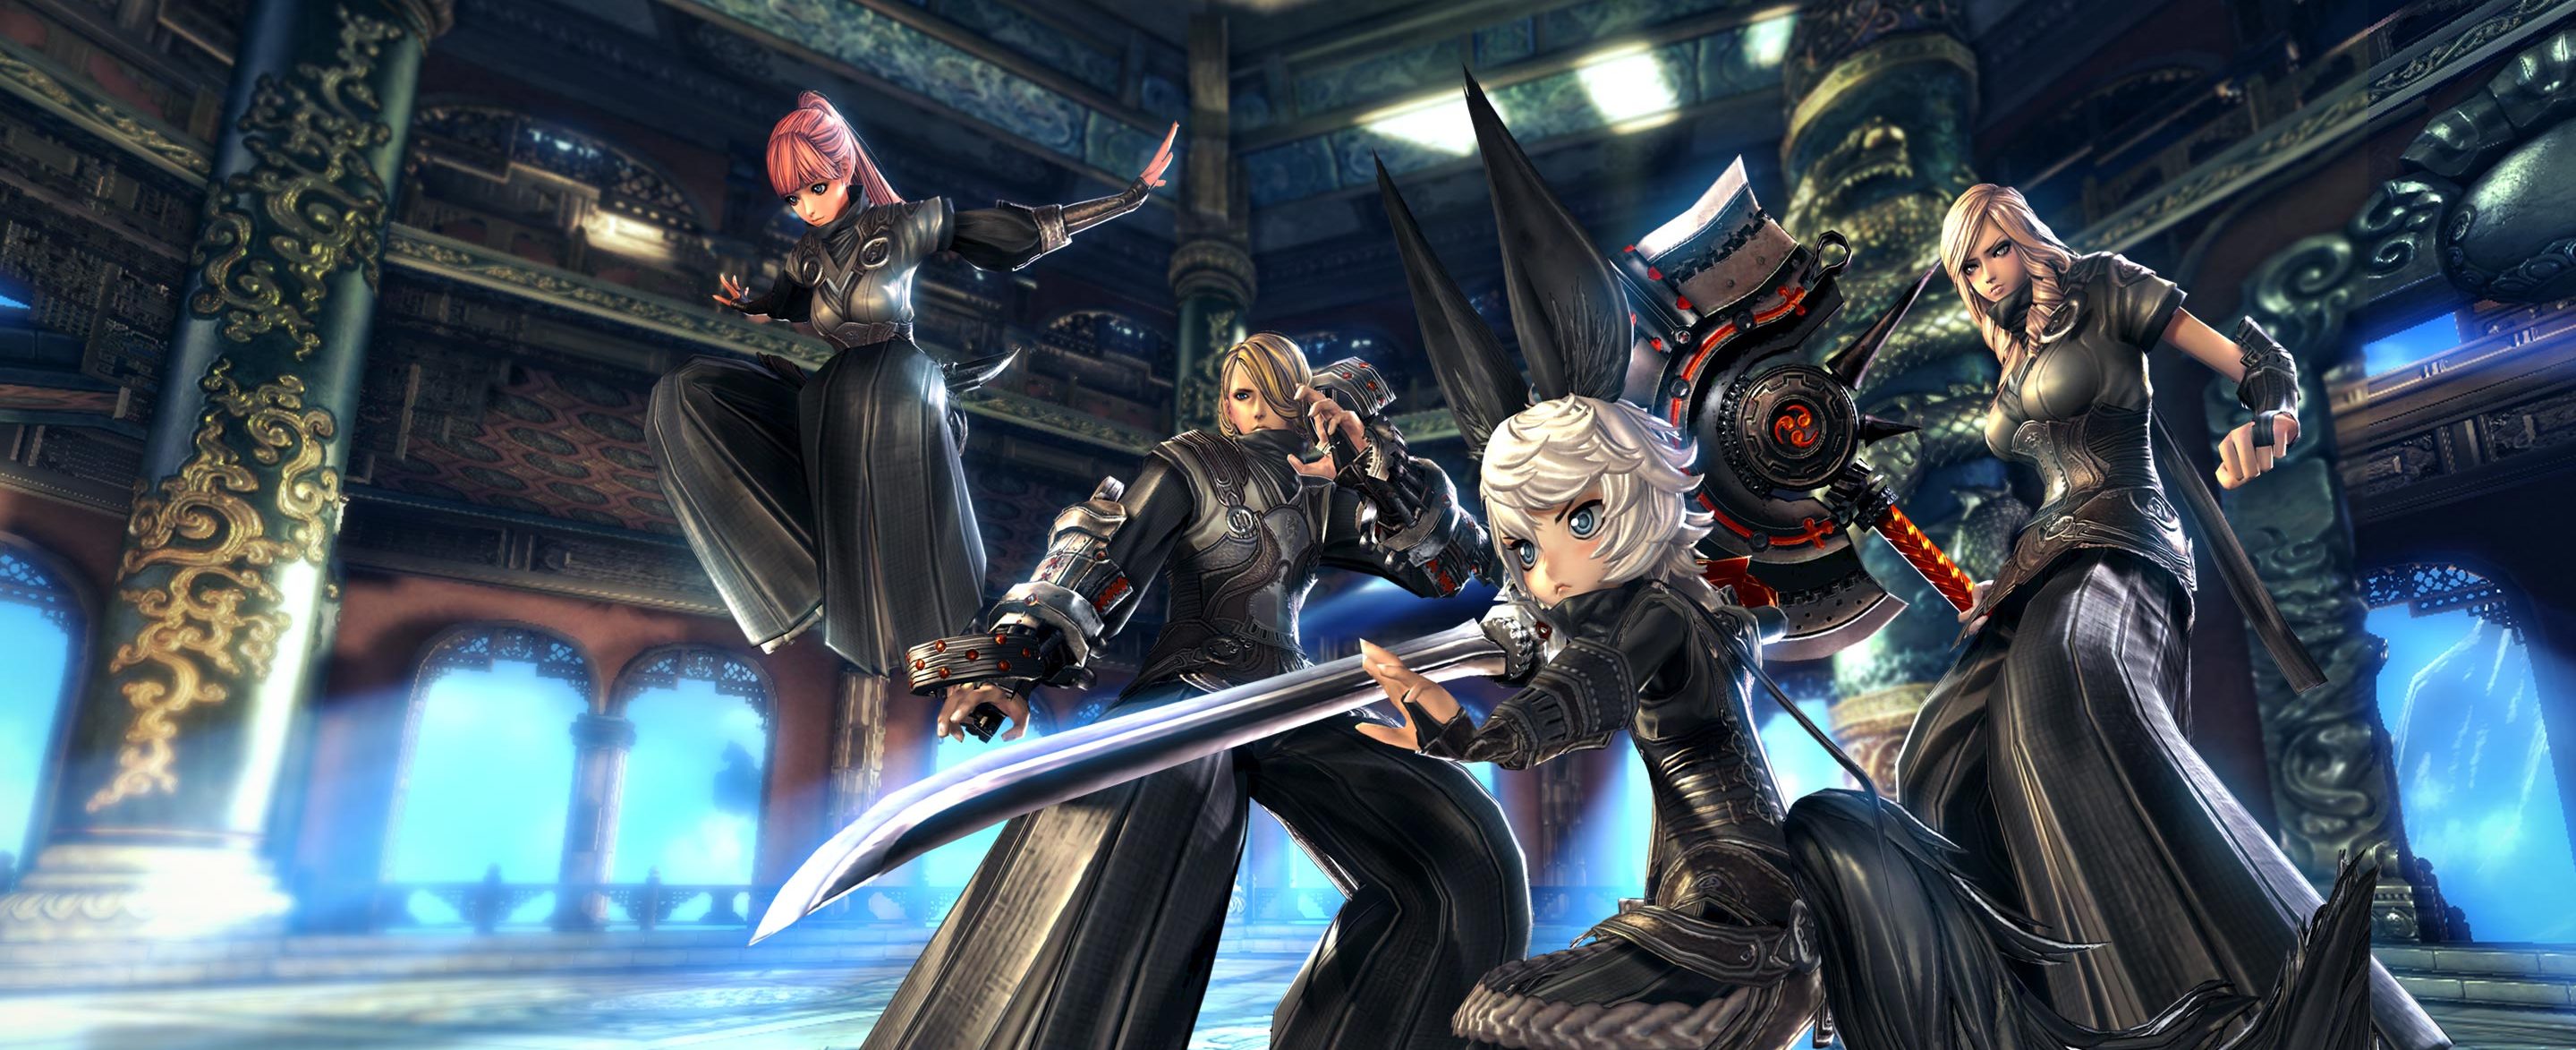 Blade and Soul: MMORPG wechselt auf Unreal Engine 4 – gibt Ausblick